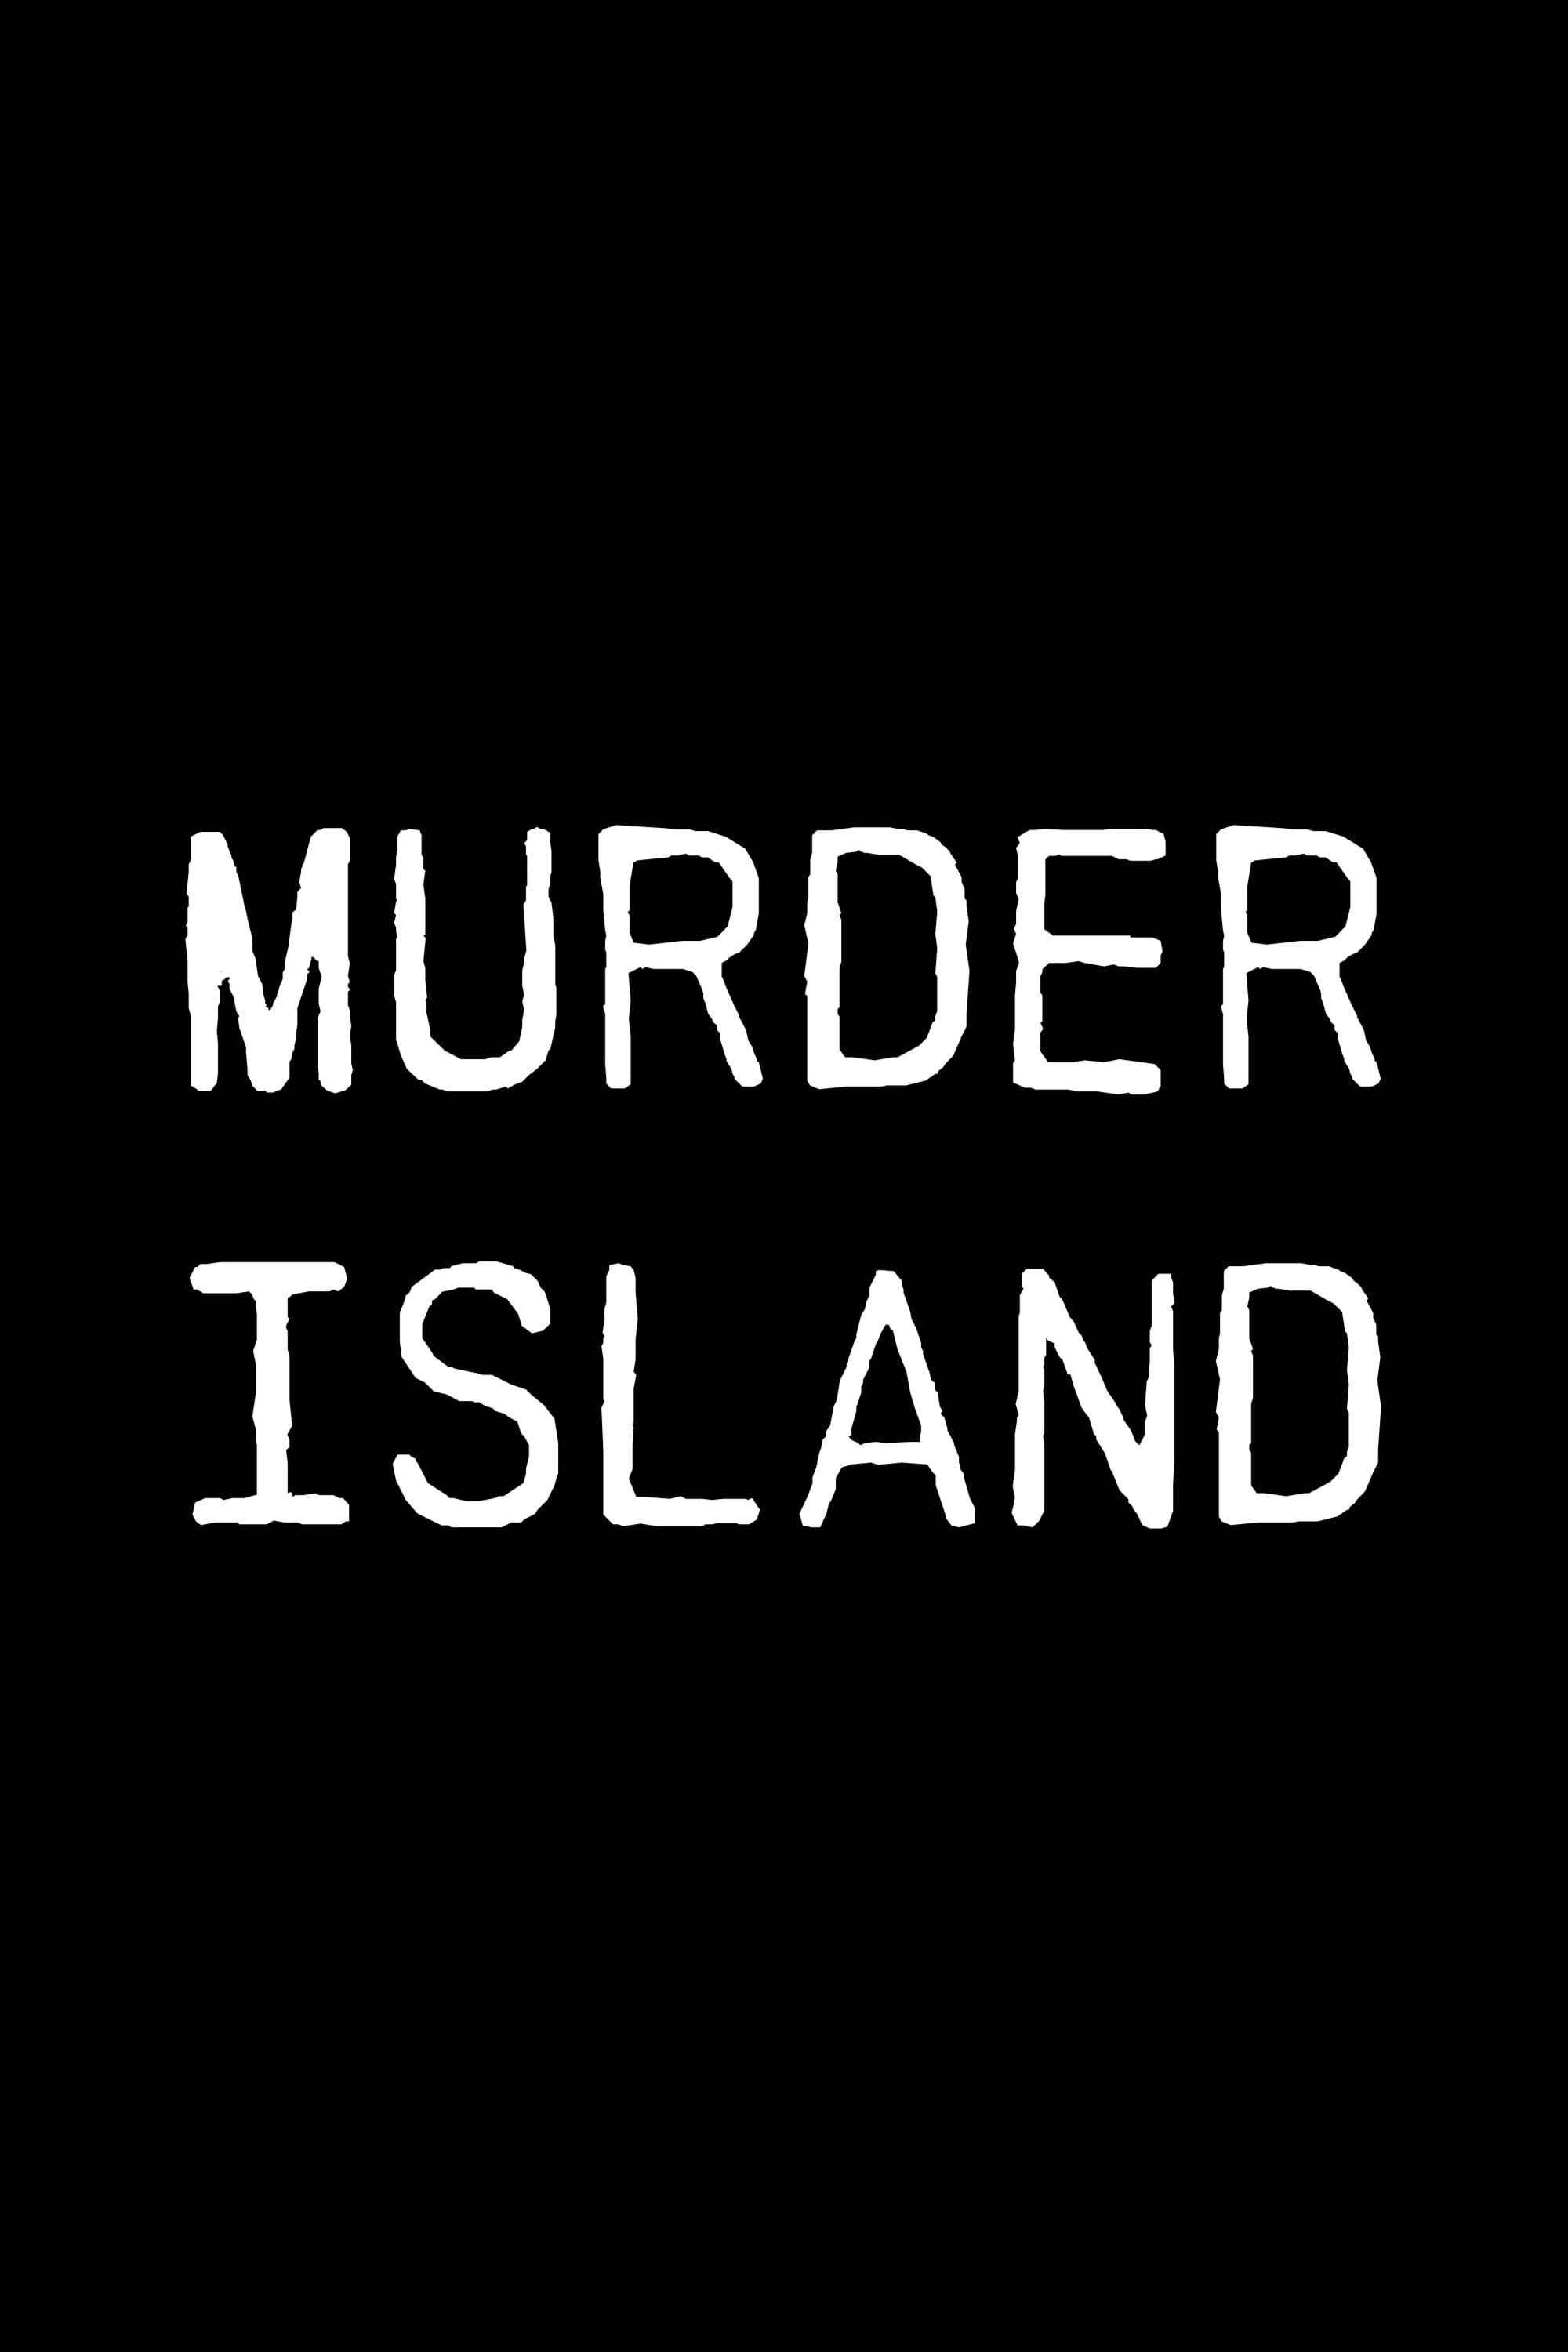 Murder Island poster